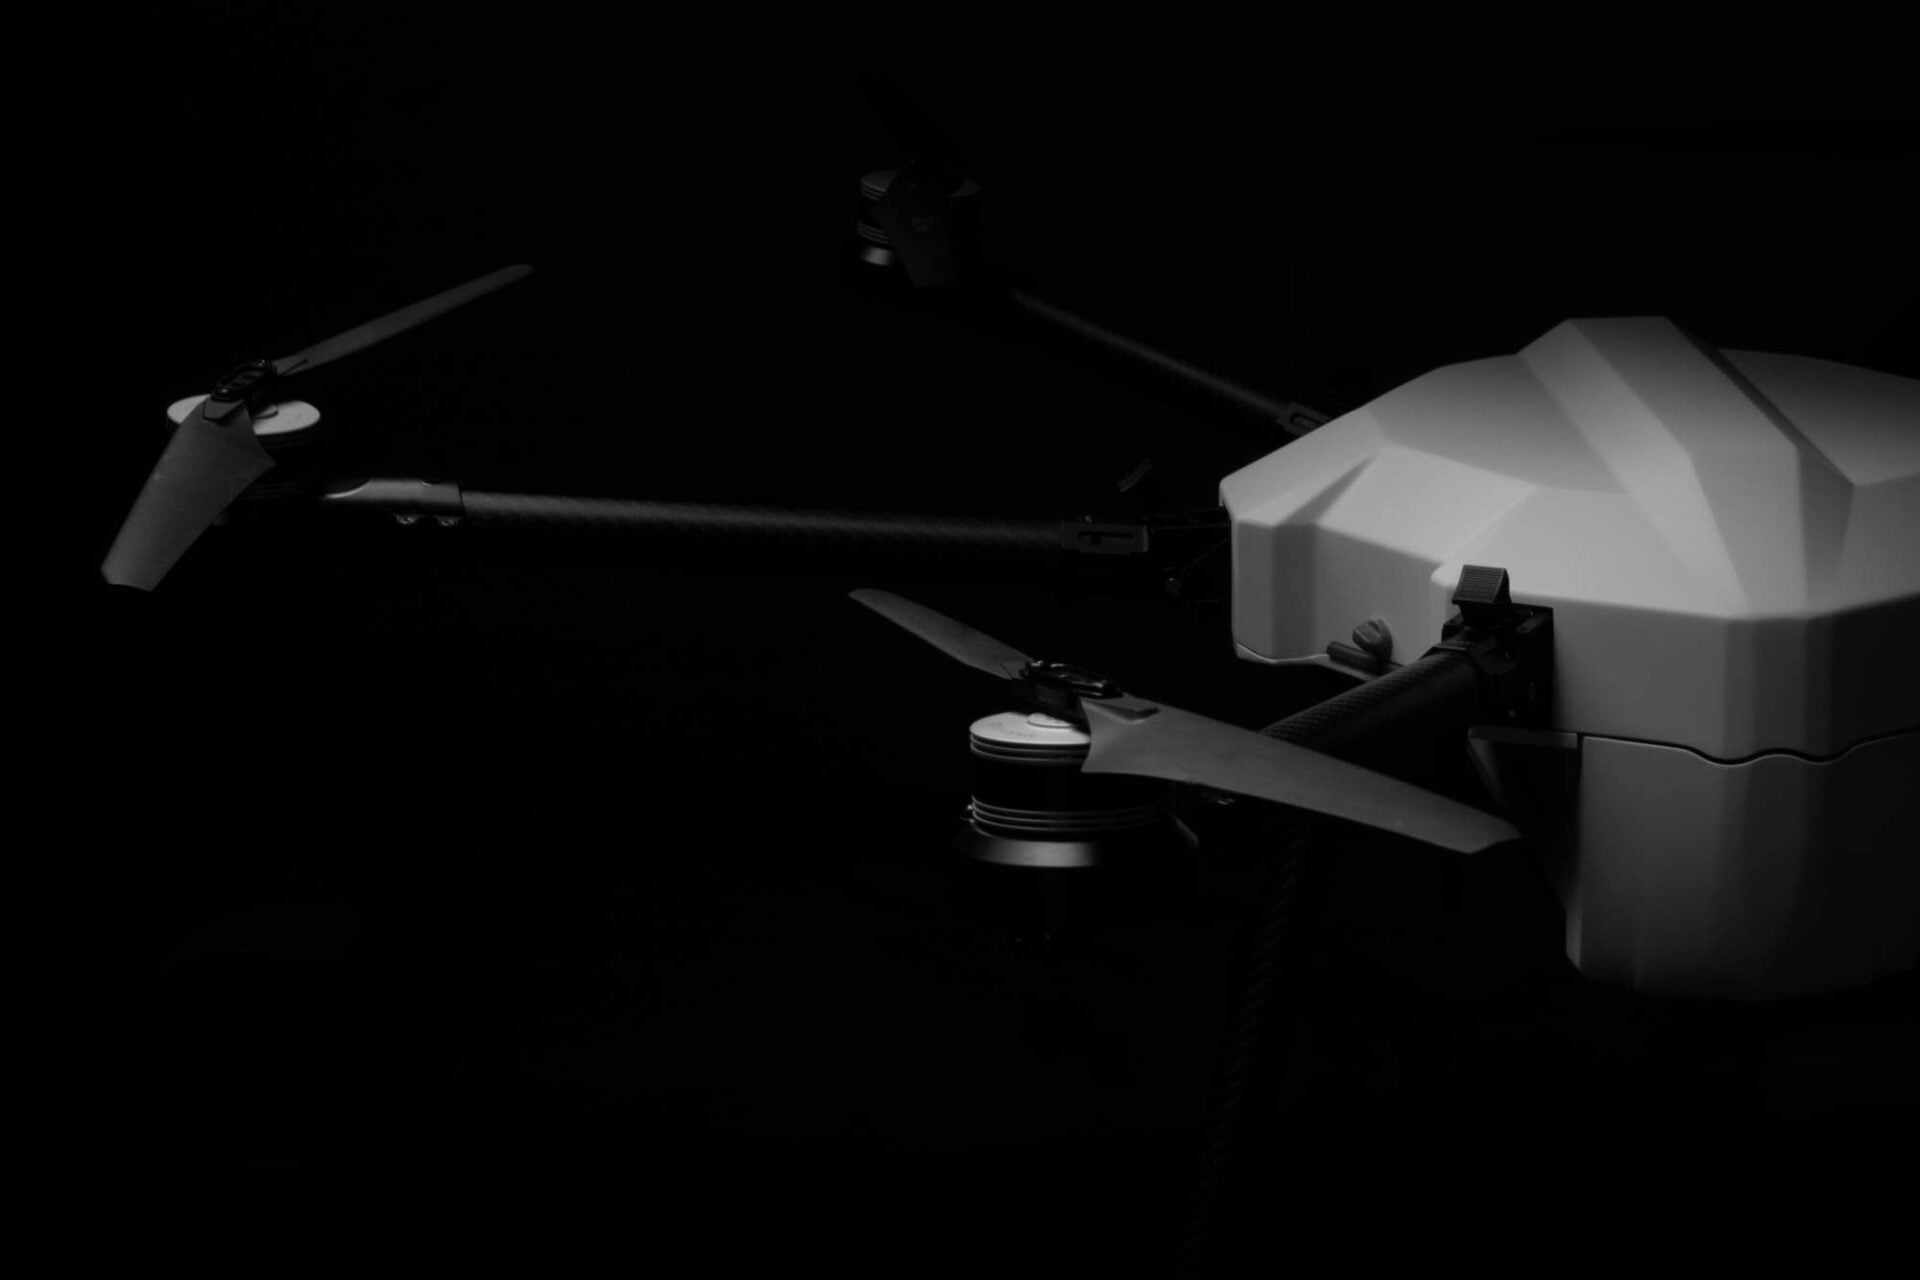 HEIFU UAV in the dark